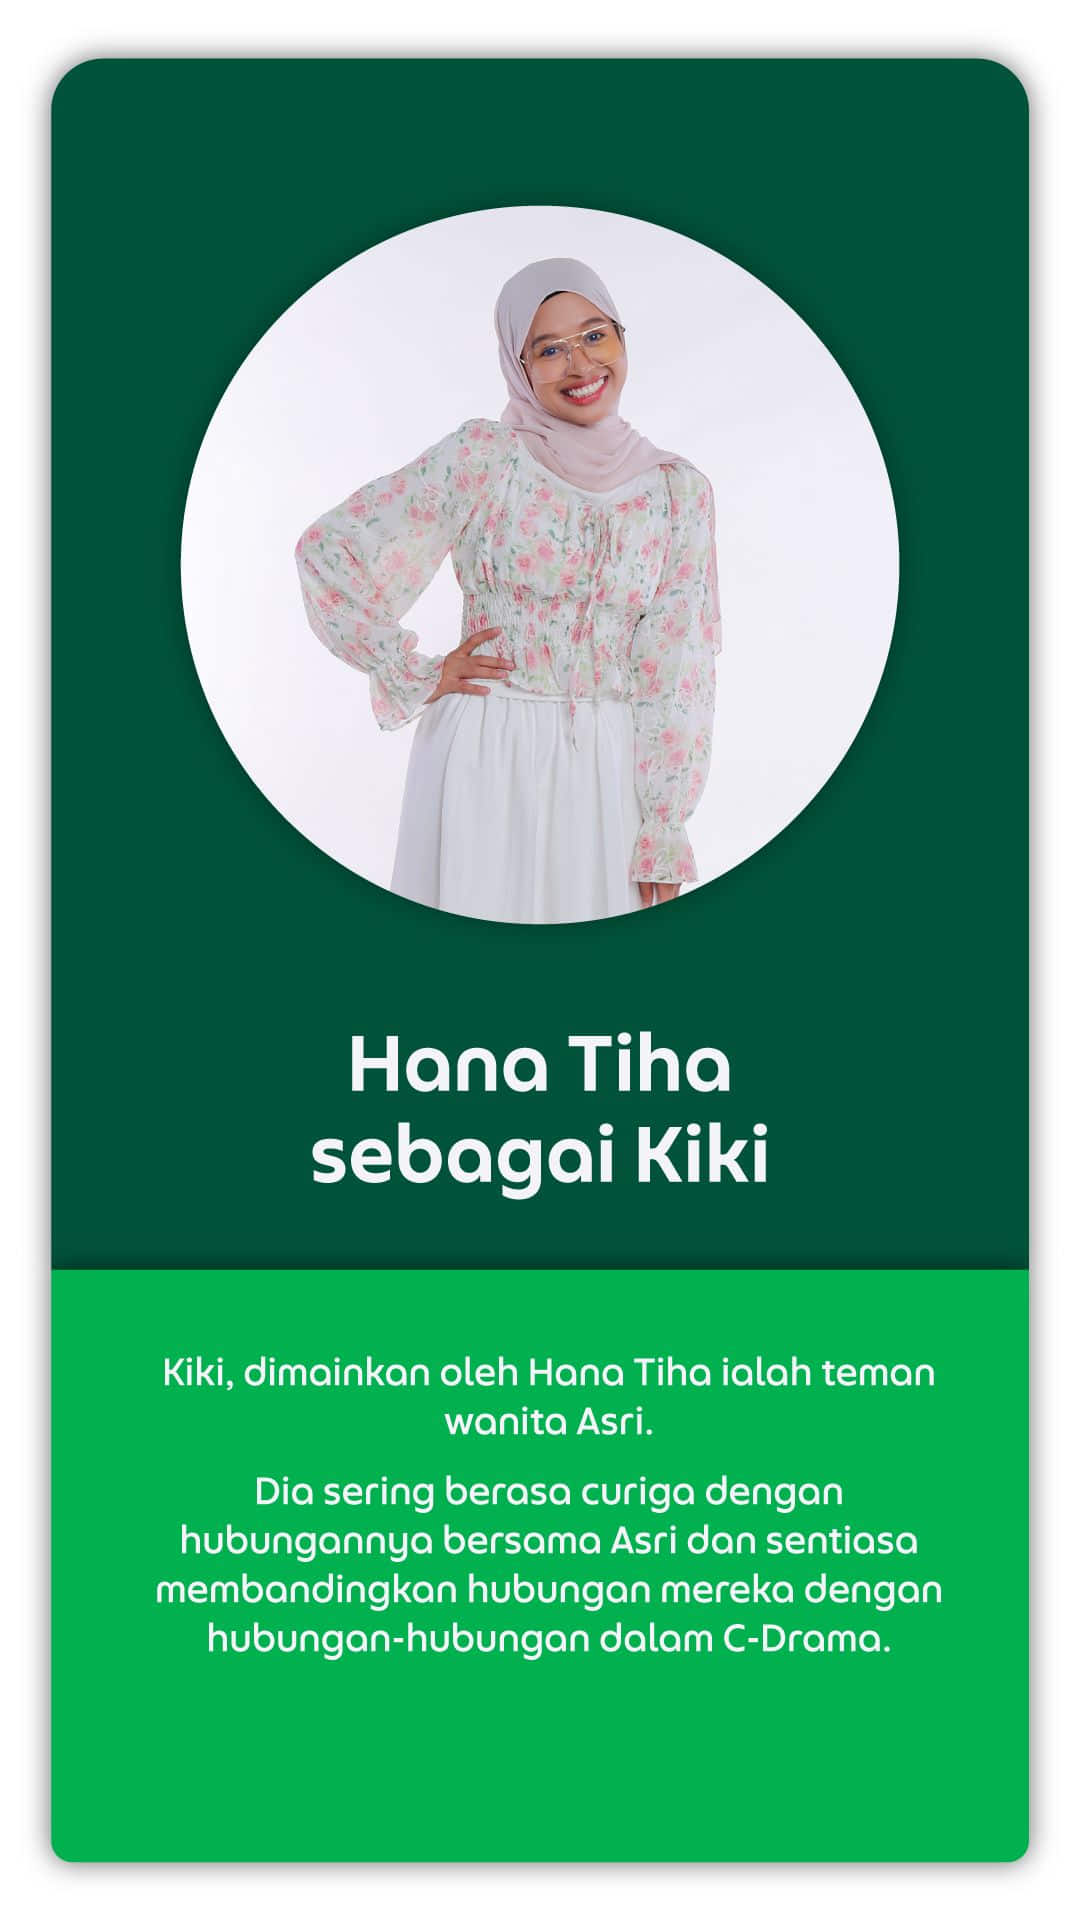 Hana Tiha sebagai Kiki